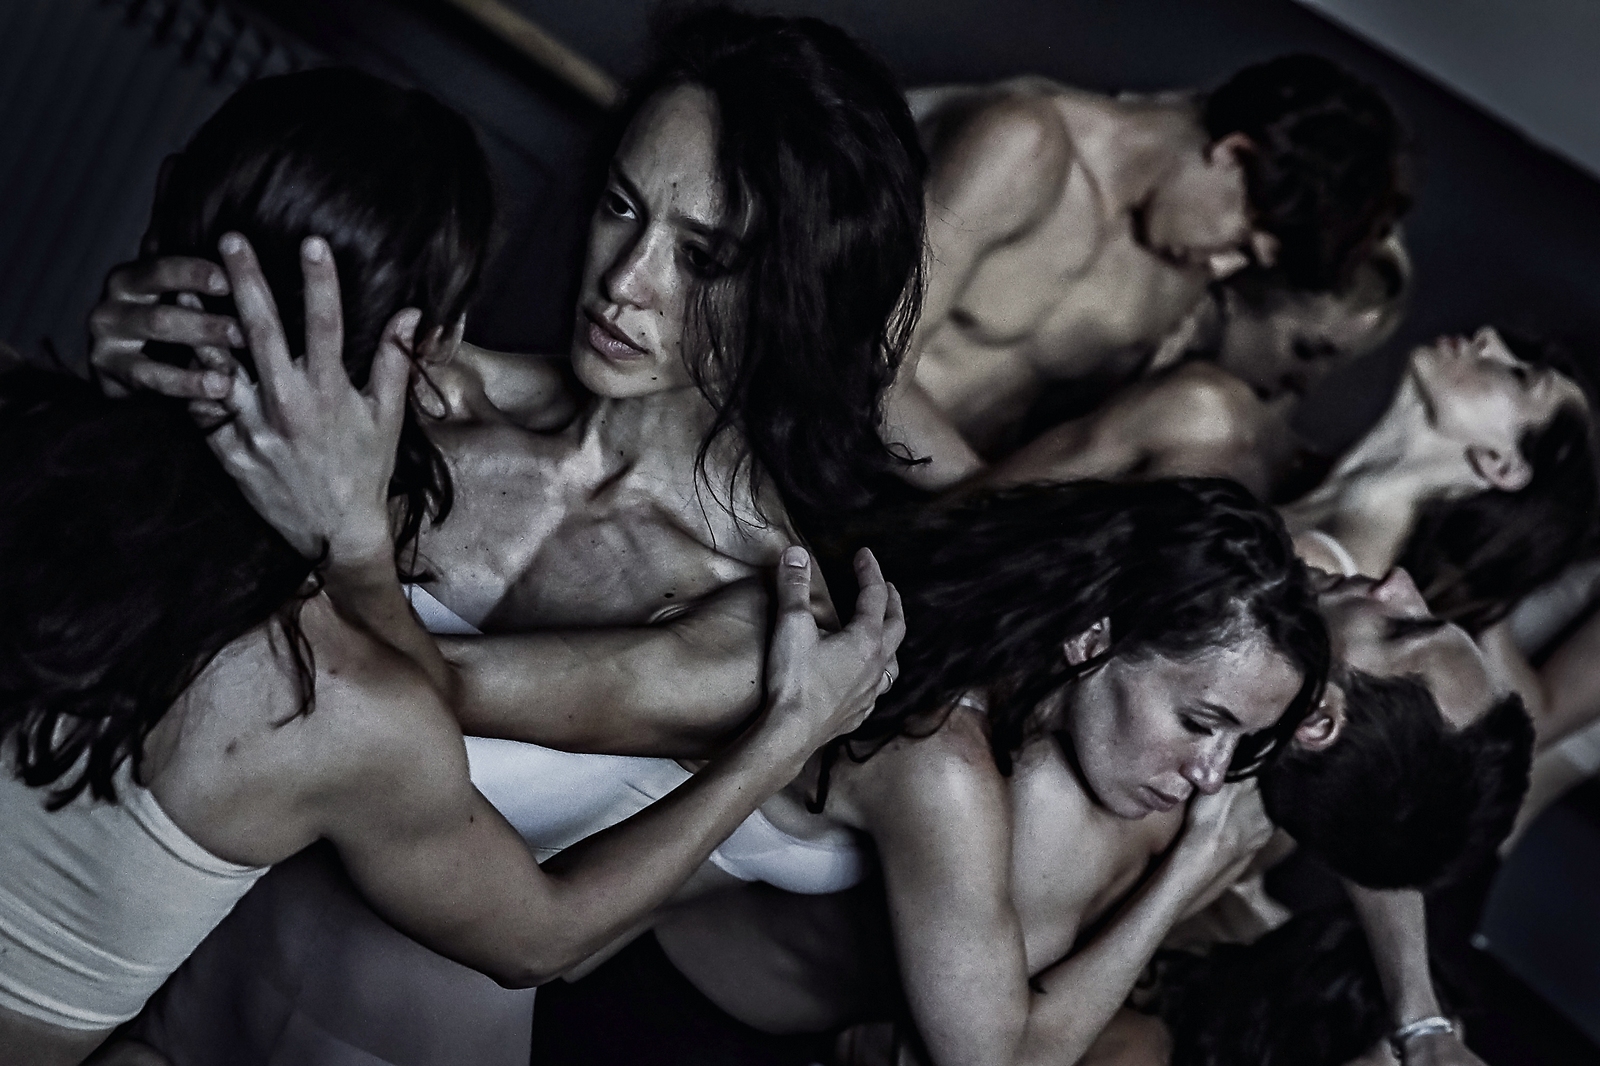 "Plamteća voda" riječkog Baleta - ples suprotnosti uz jake emocije i snažnu umjetničku poruku